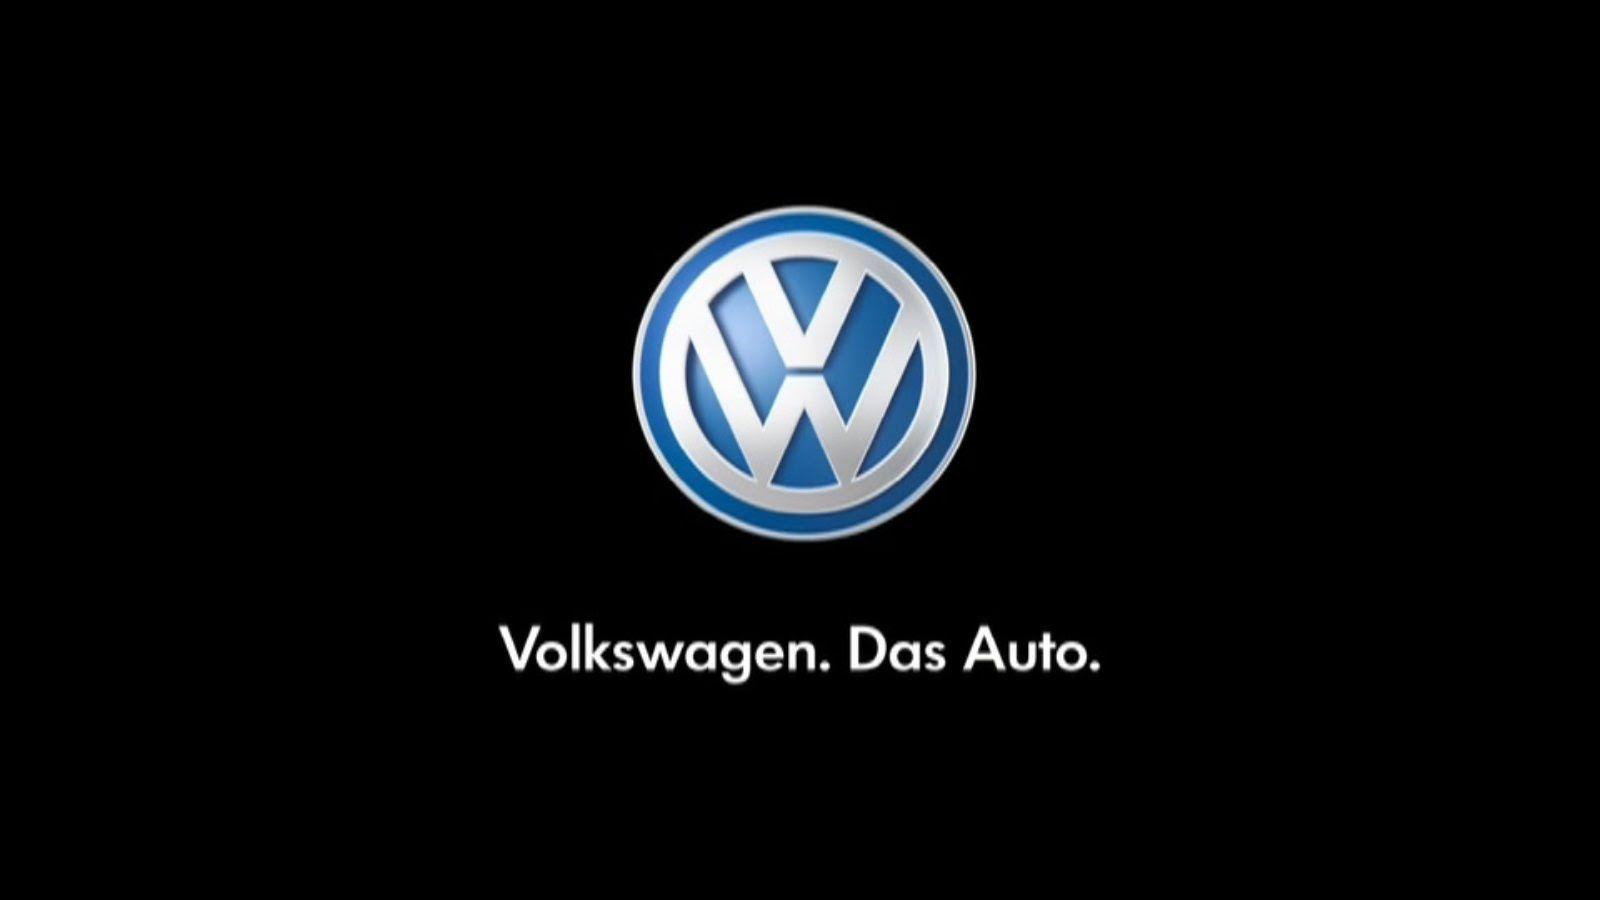 Volkswagen Word Logo - Looking ahead to Volkswagen Concept cars